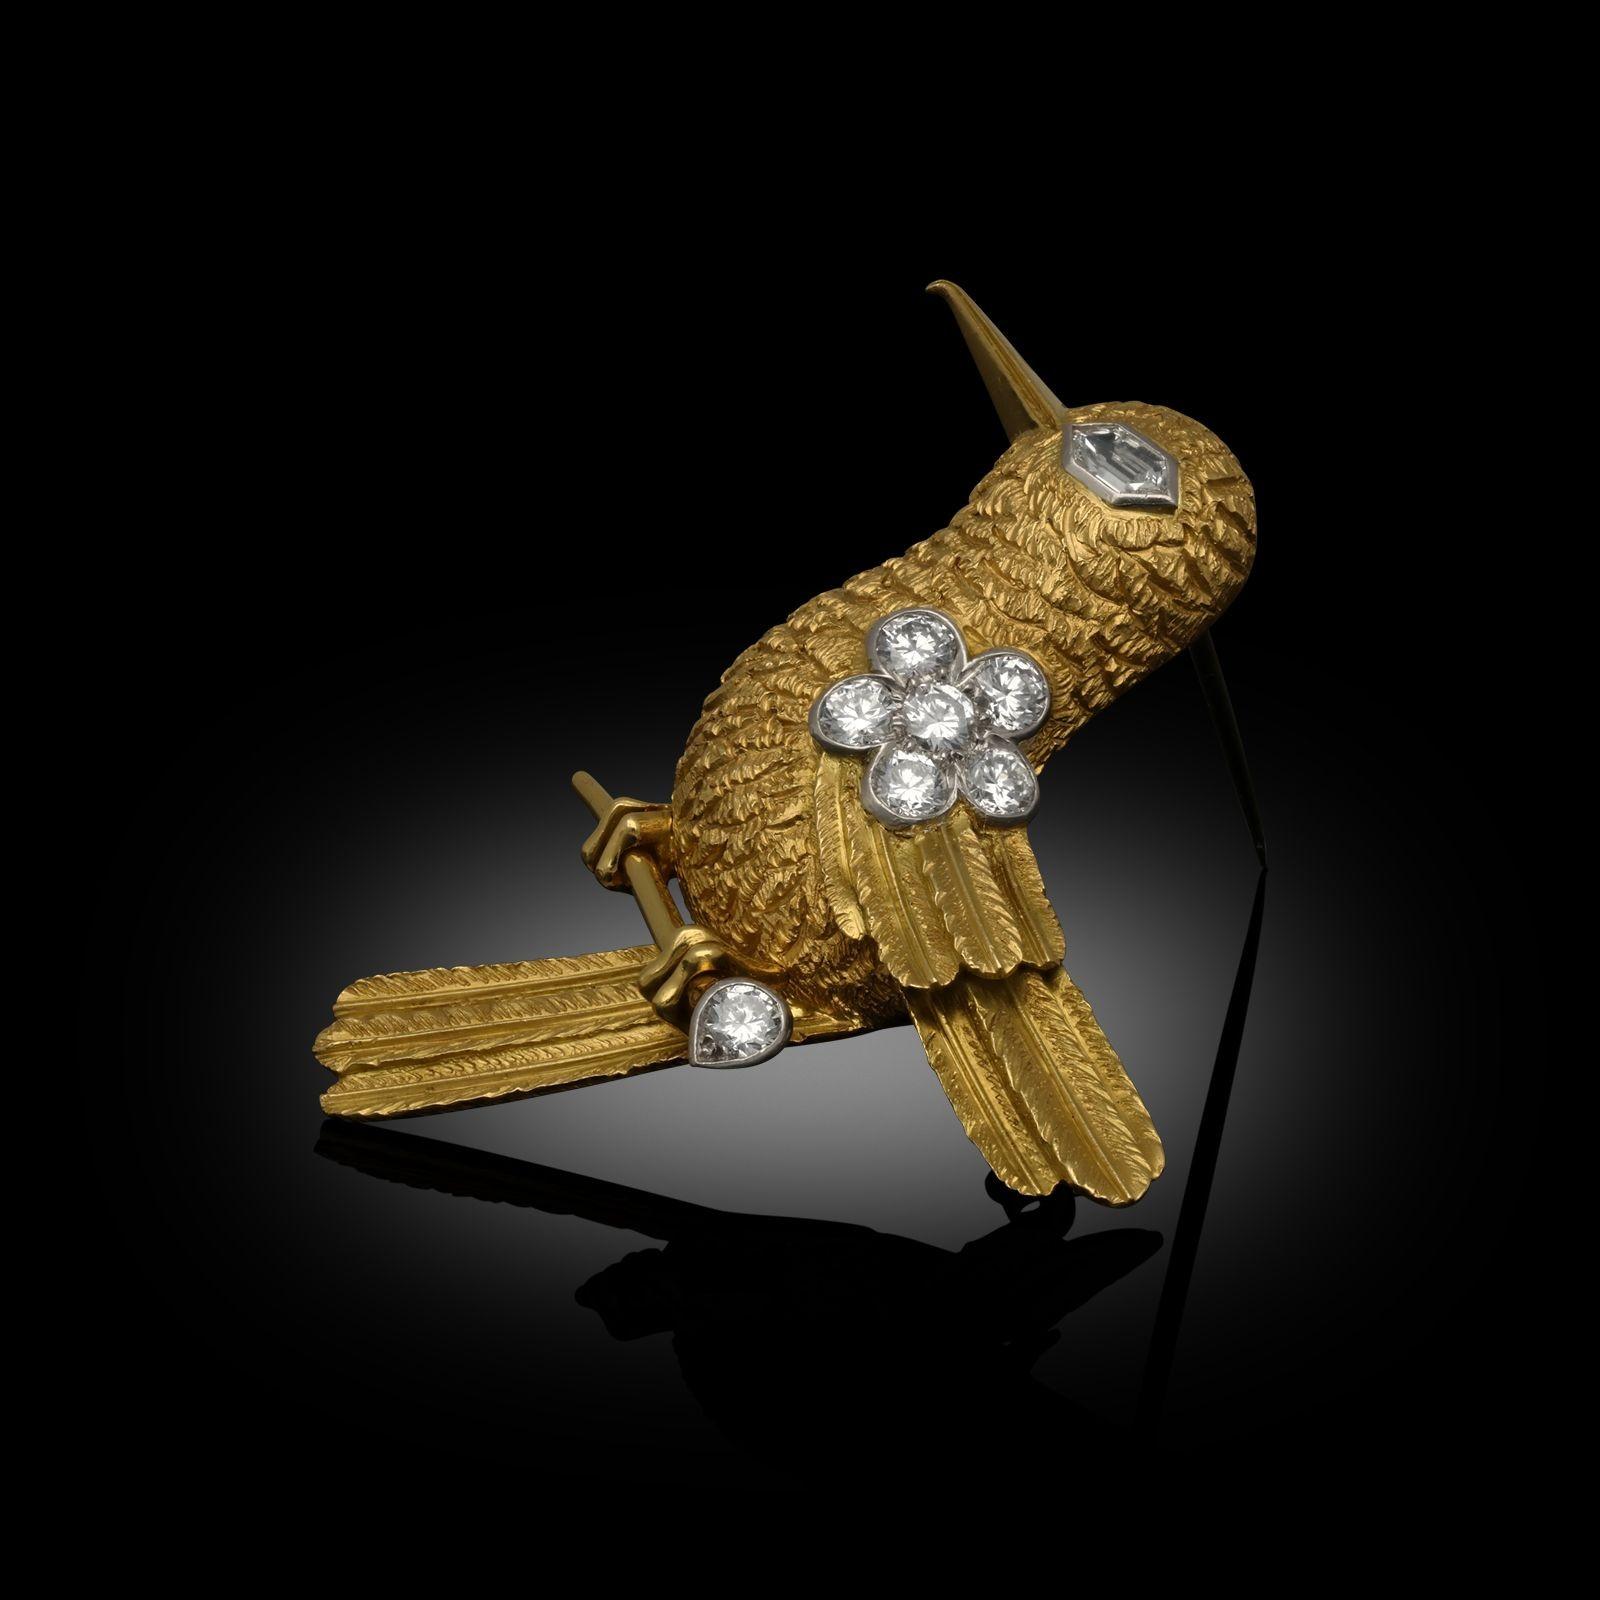 Eine bezaubernde stilisierte Kolibri-Brosche von Cartier aus den 1960er Jahren in Gold und Diamanten. Der Körper ist fein modelliert in 18-karätigem Gelbgold mit einer strukturierten Oberfläche und sorgfältig geformten Federn, der Schnabel und die